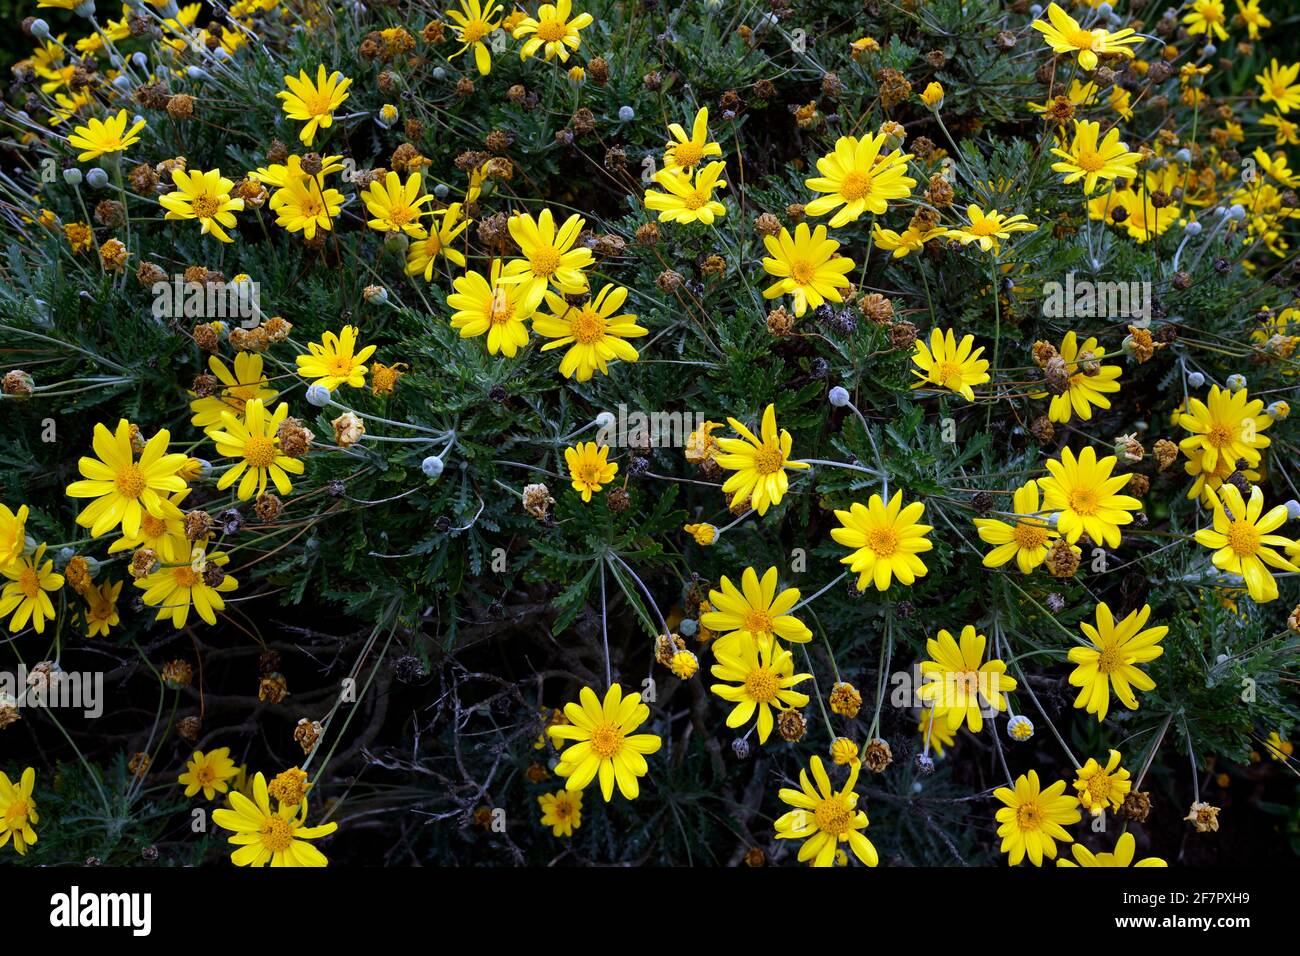 Flowering yellow daisy bush. Stock Photo